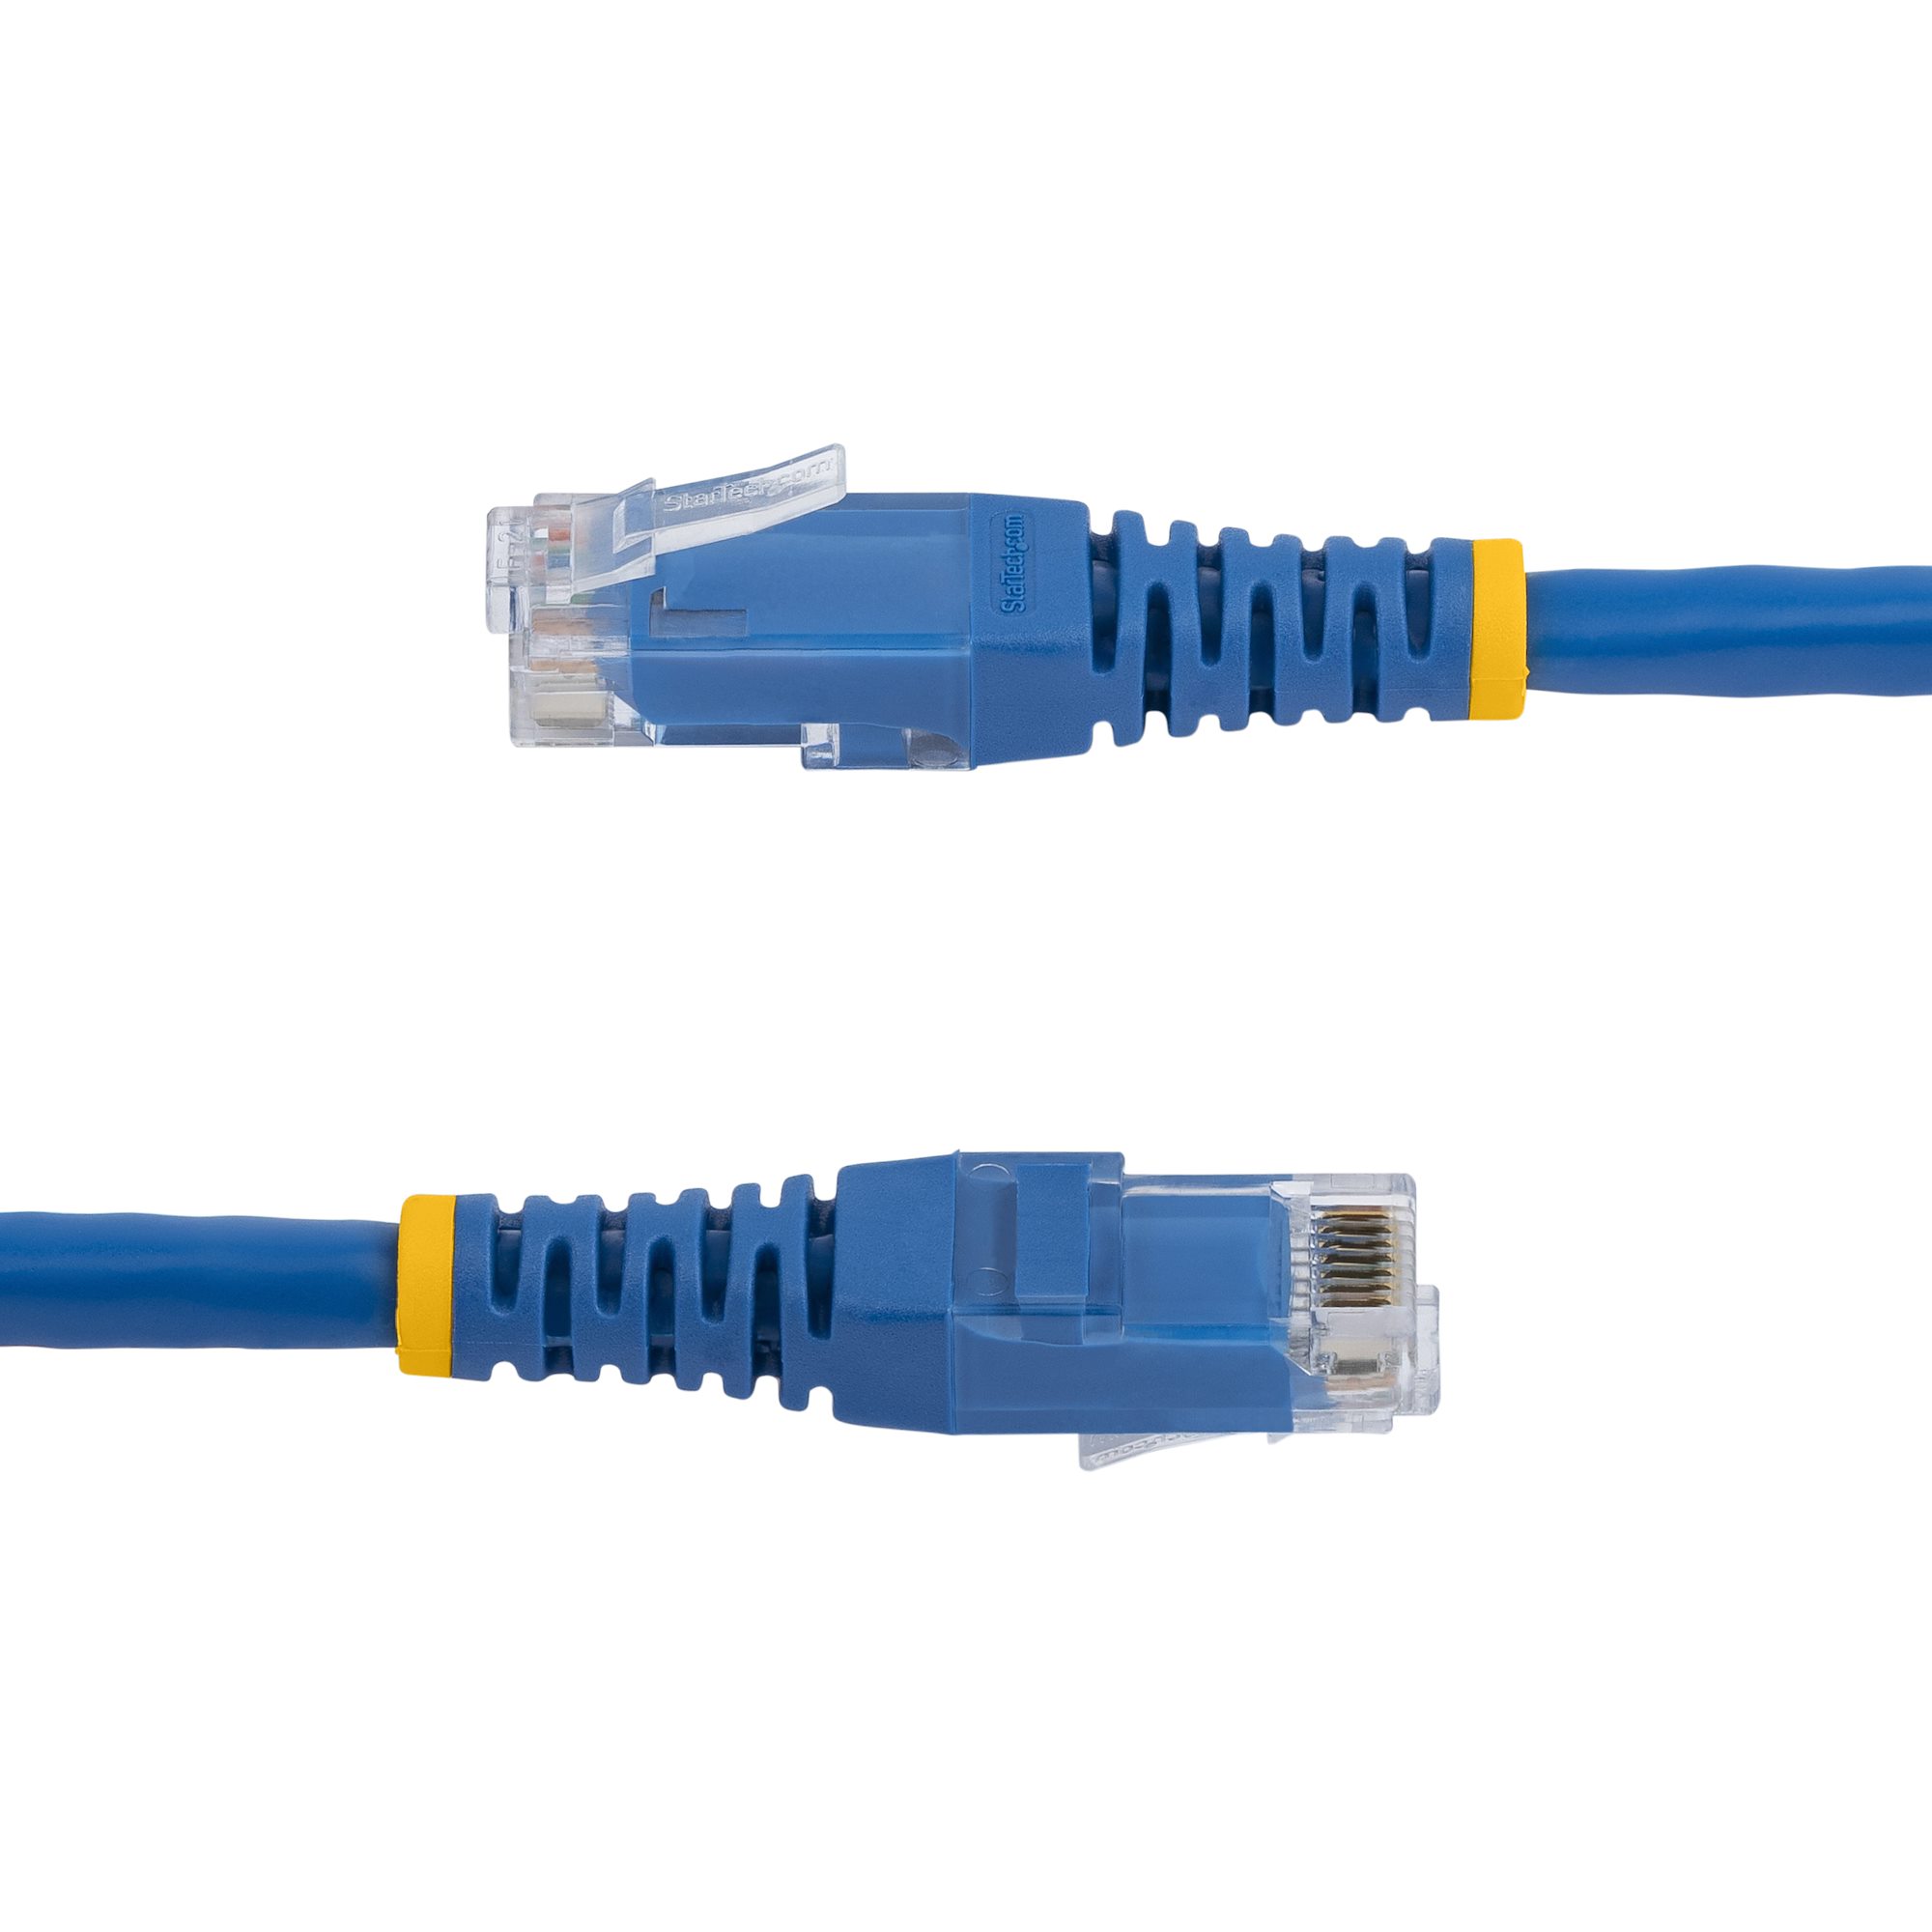 6ft CAT6 Ethernet Cable Blue Cat 6 PoE (C6PATCH6BL) - Cat 6 Cables, Cables